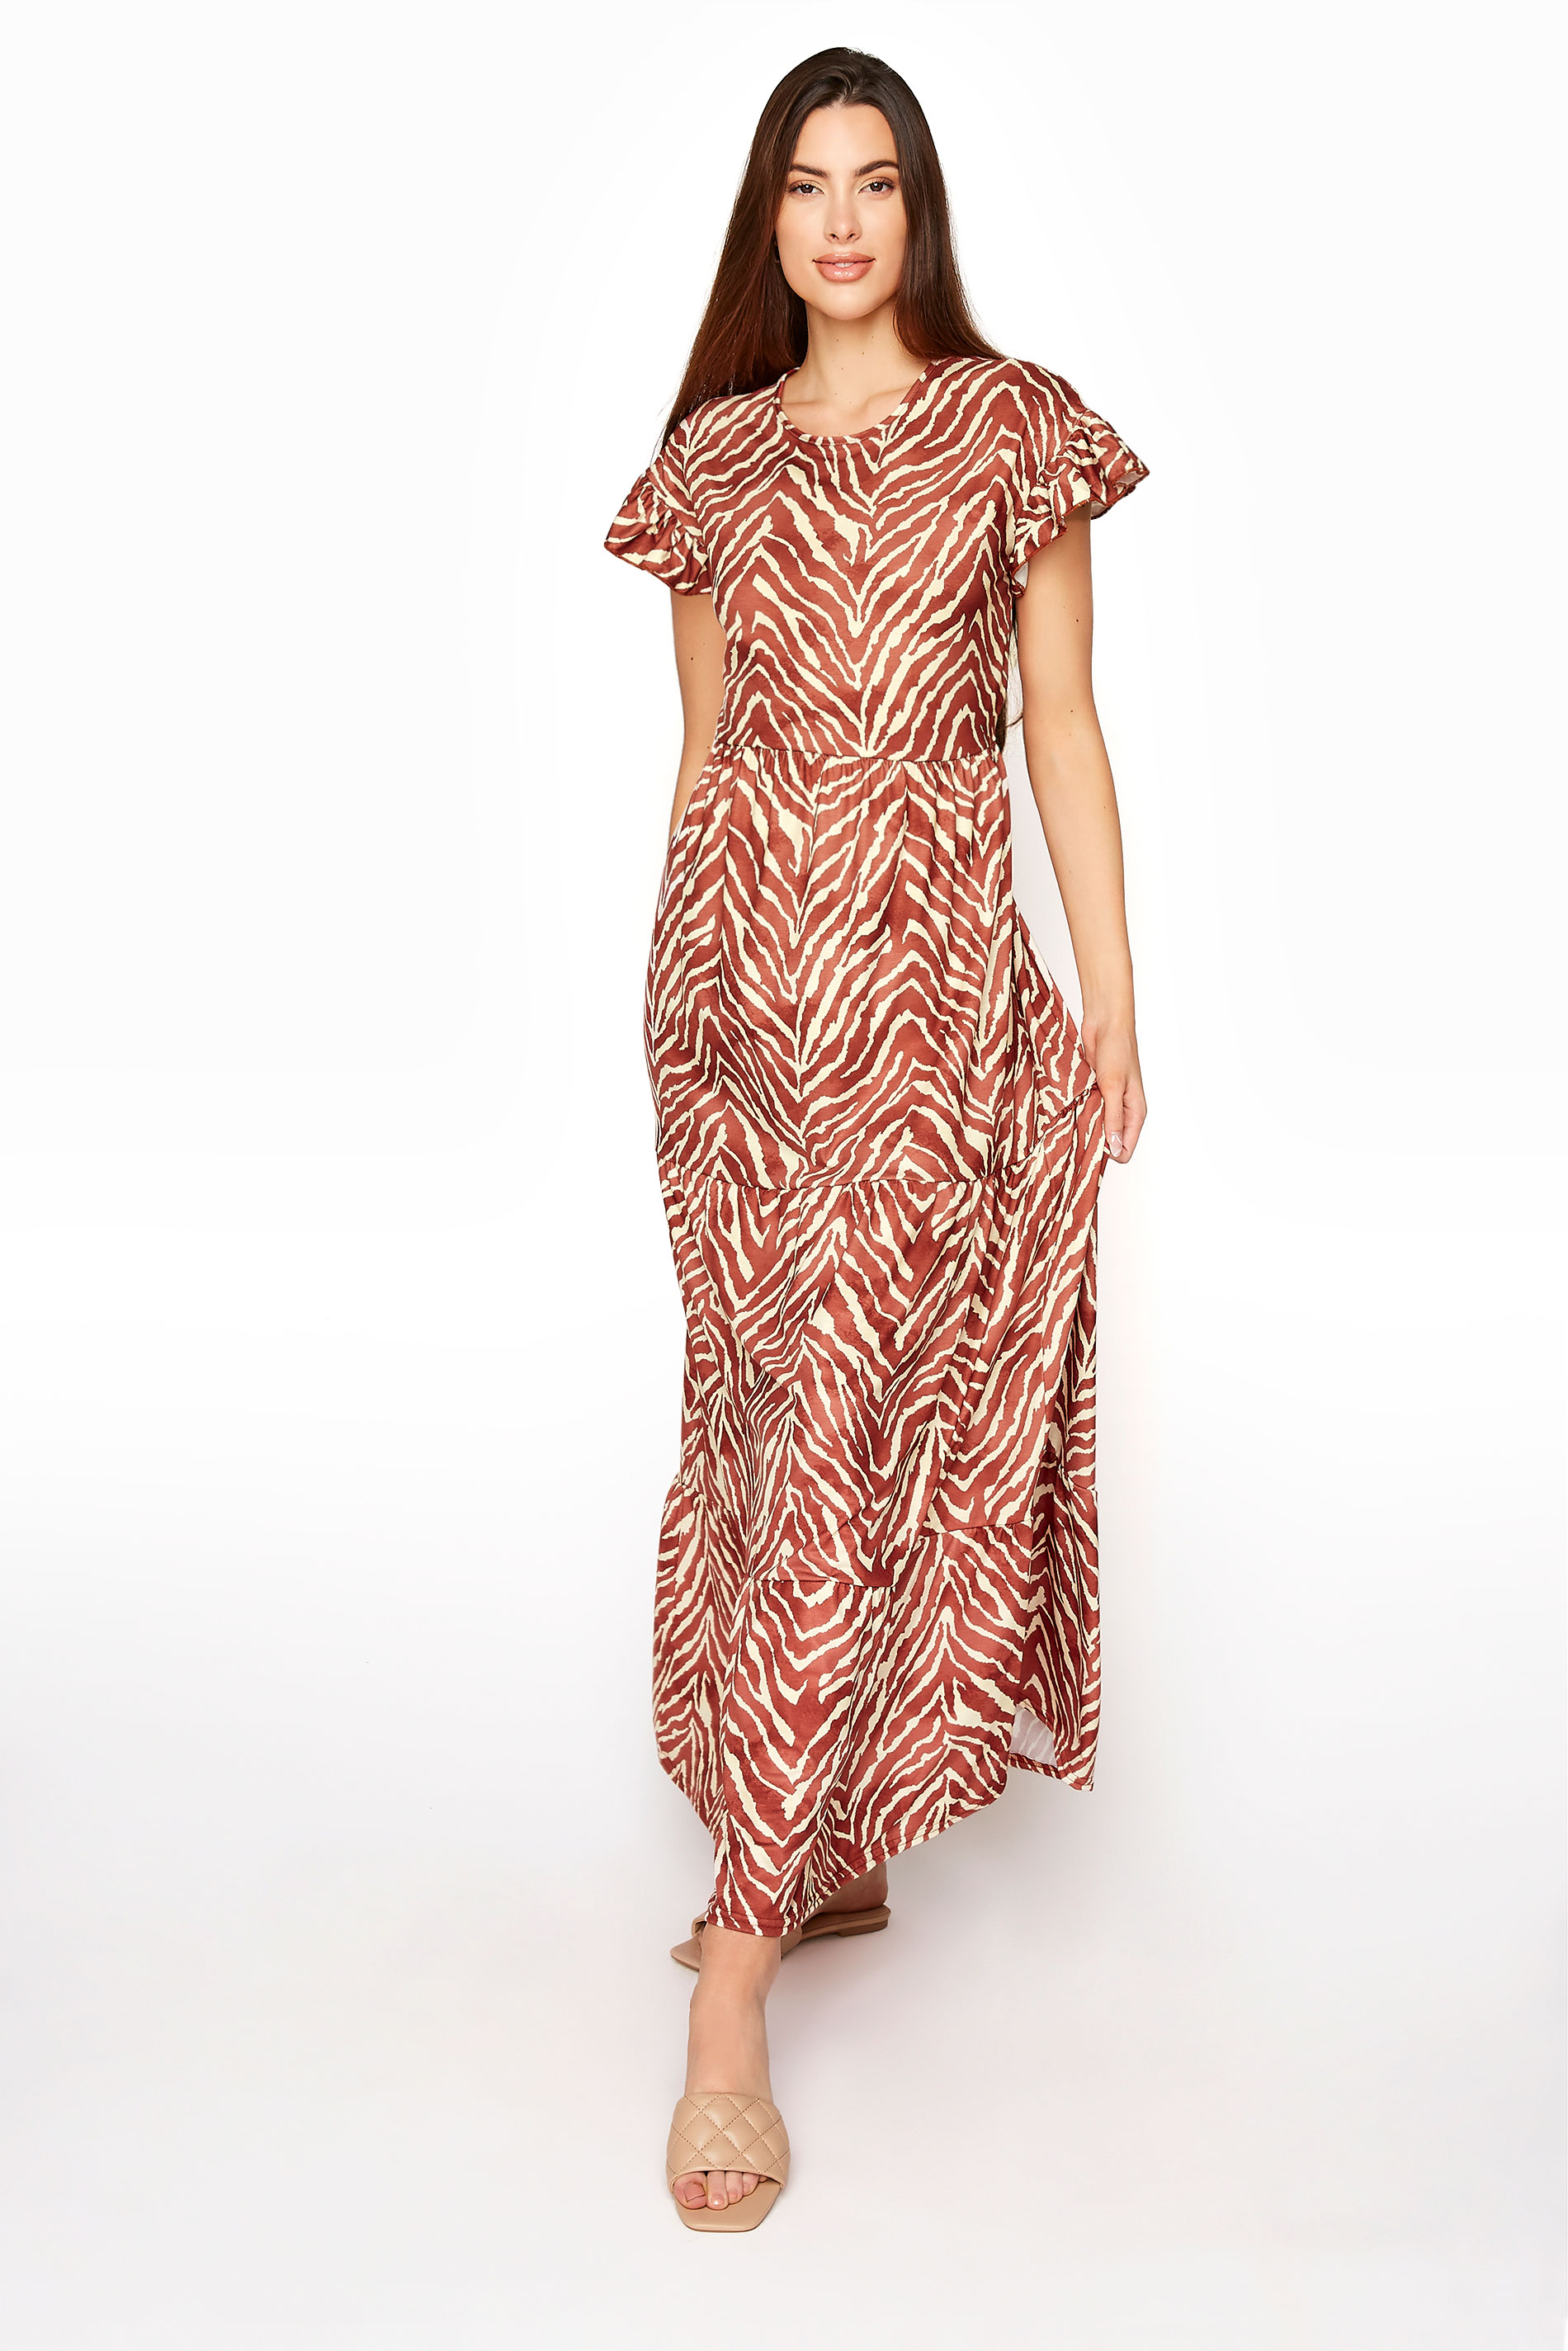 LTS Rust Orange Zebra Print Tiered Midaxi Dress | Long Tall Sally 1